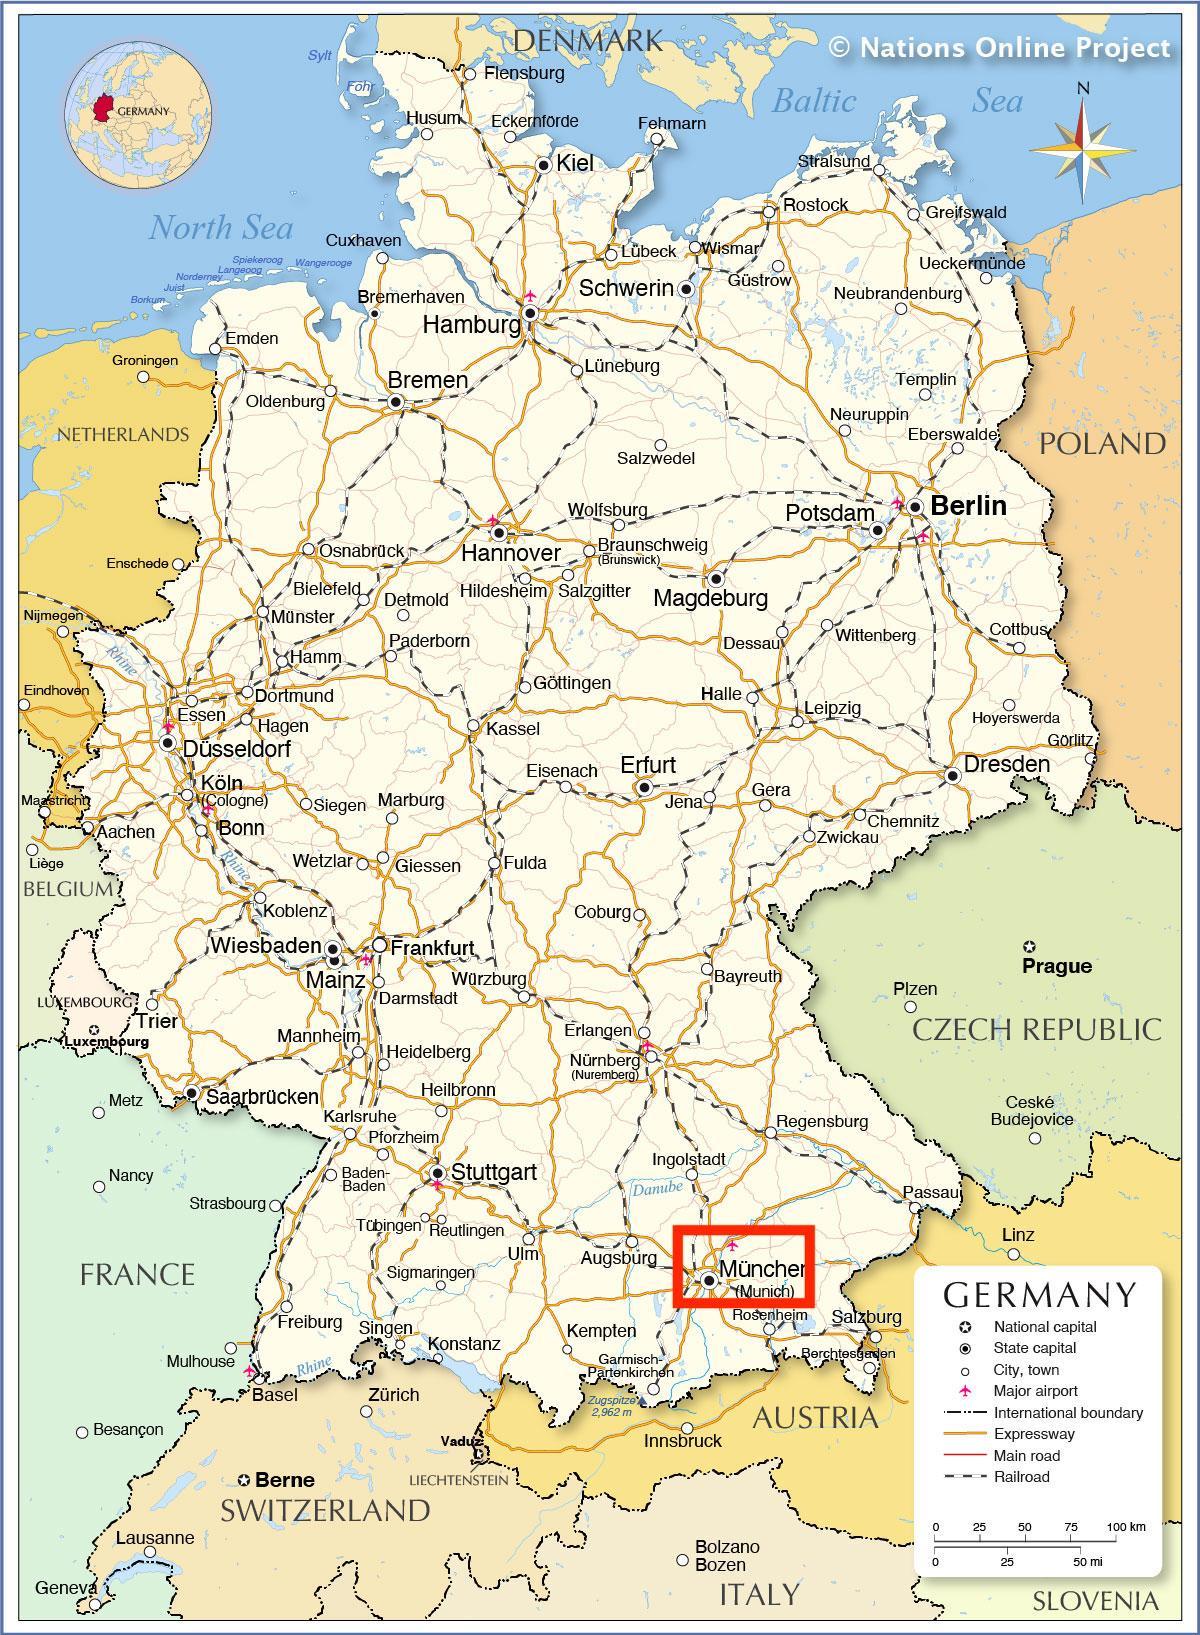 Ville de Munich sur la carte de Bavaria - Germany